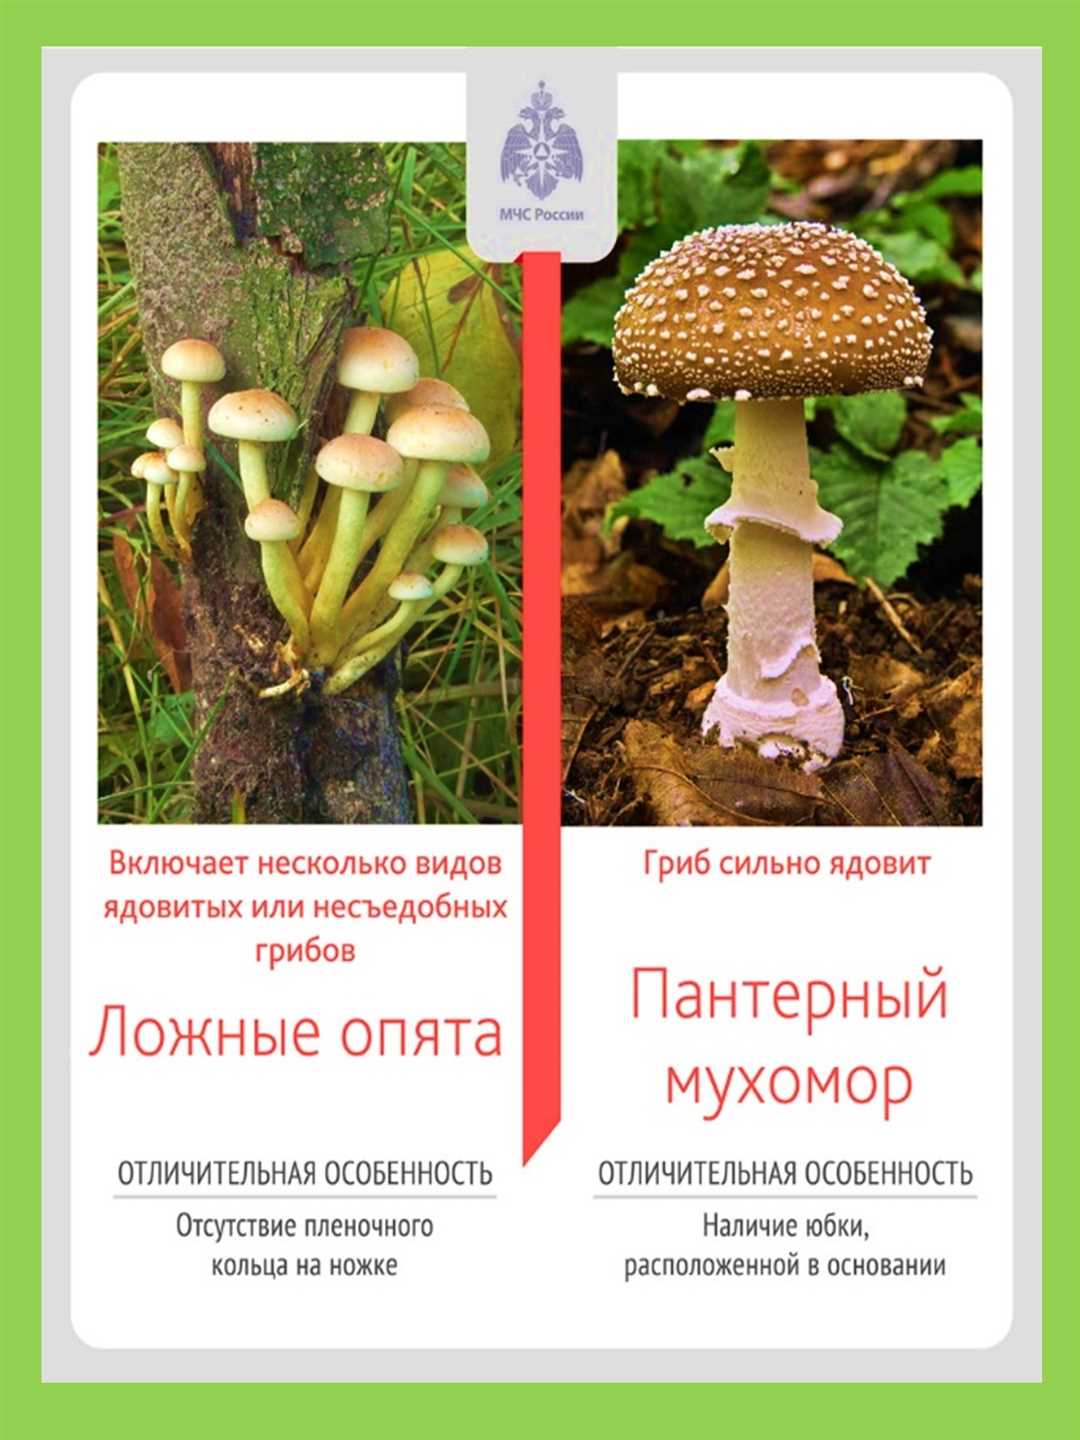 Ядовитые грибы — как их опознать по картинкам.